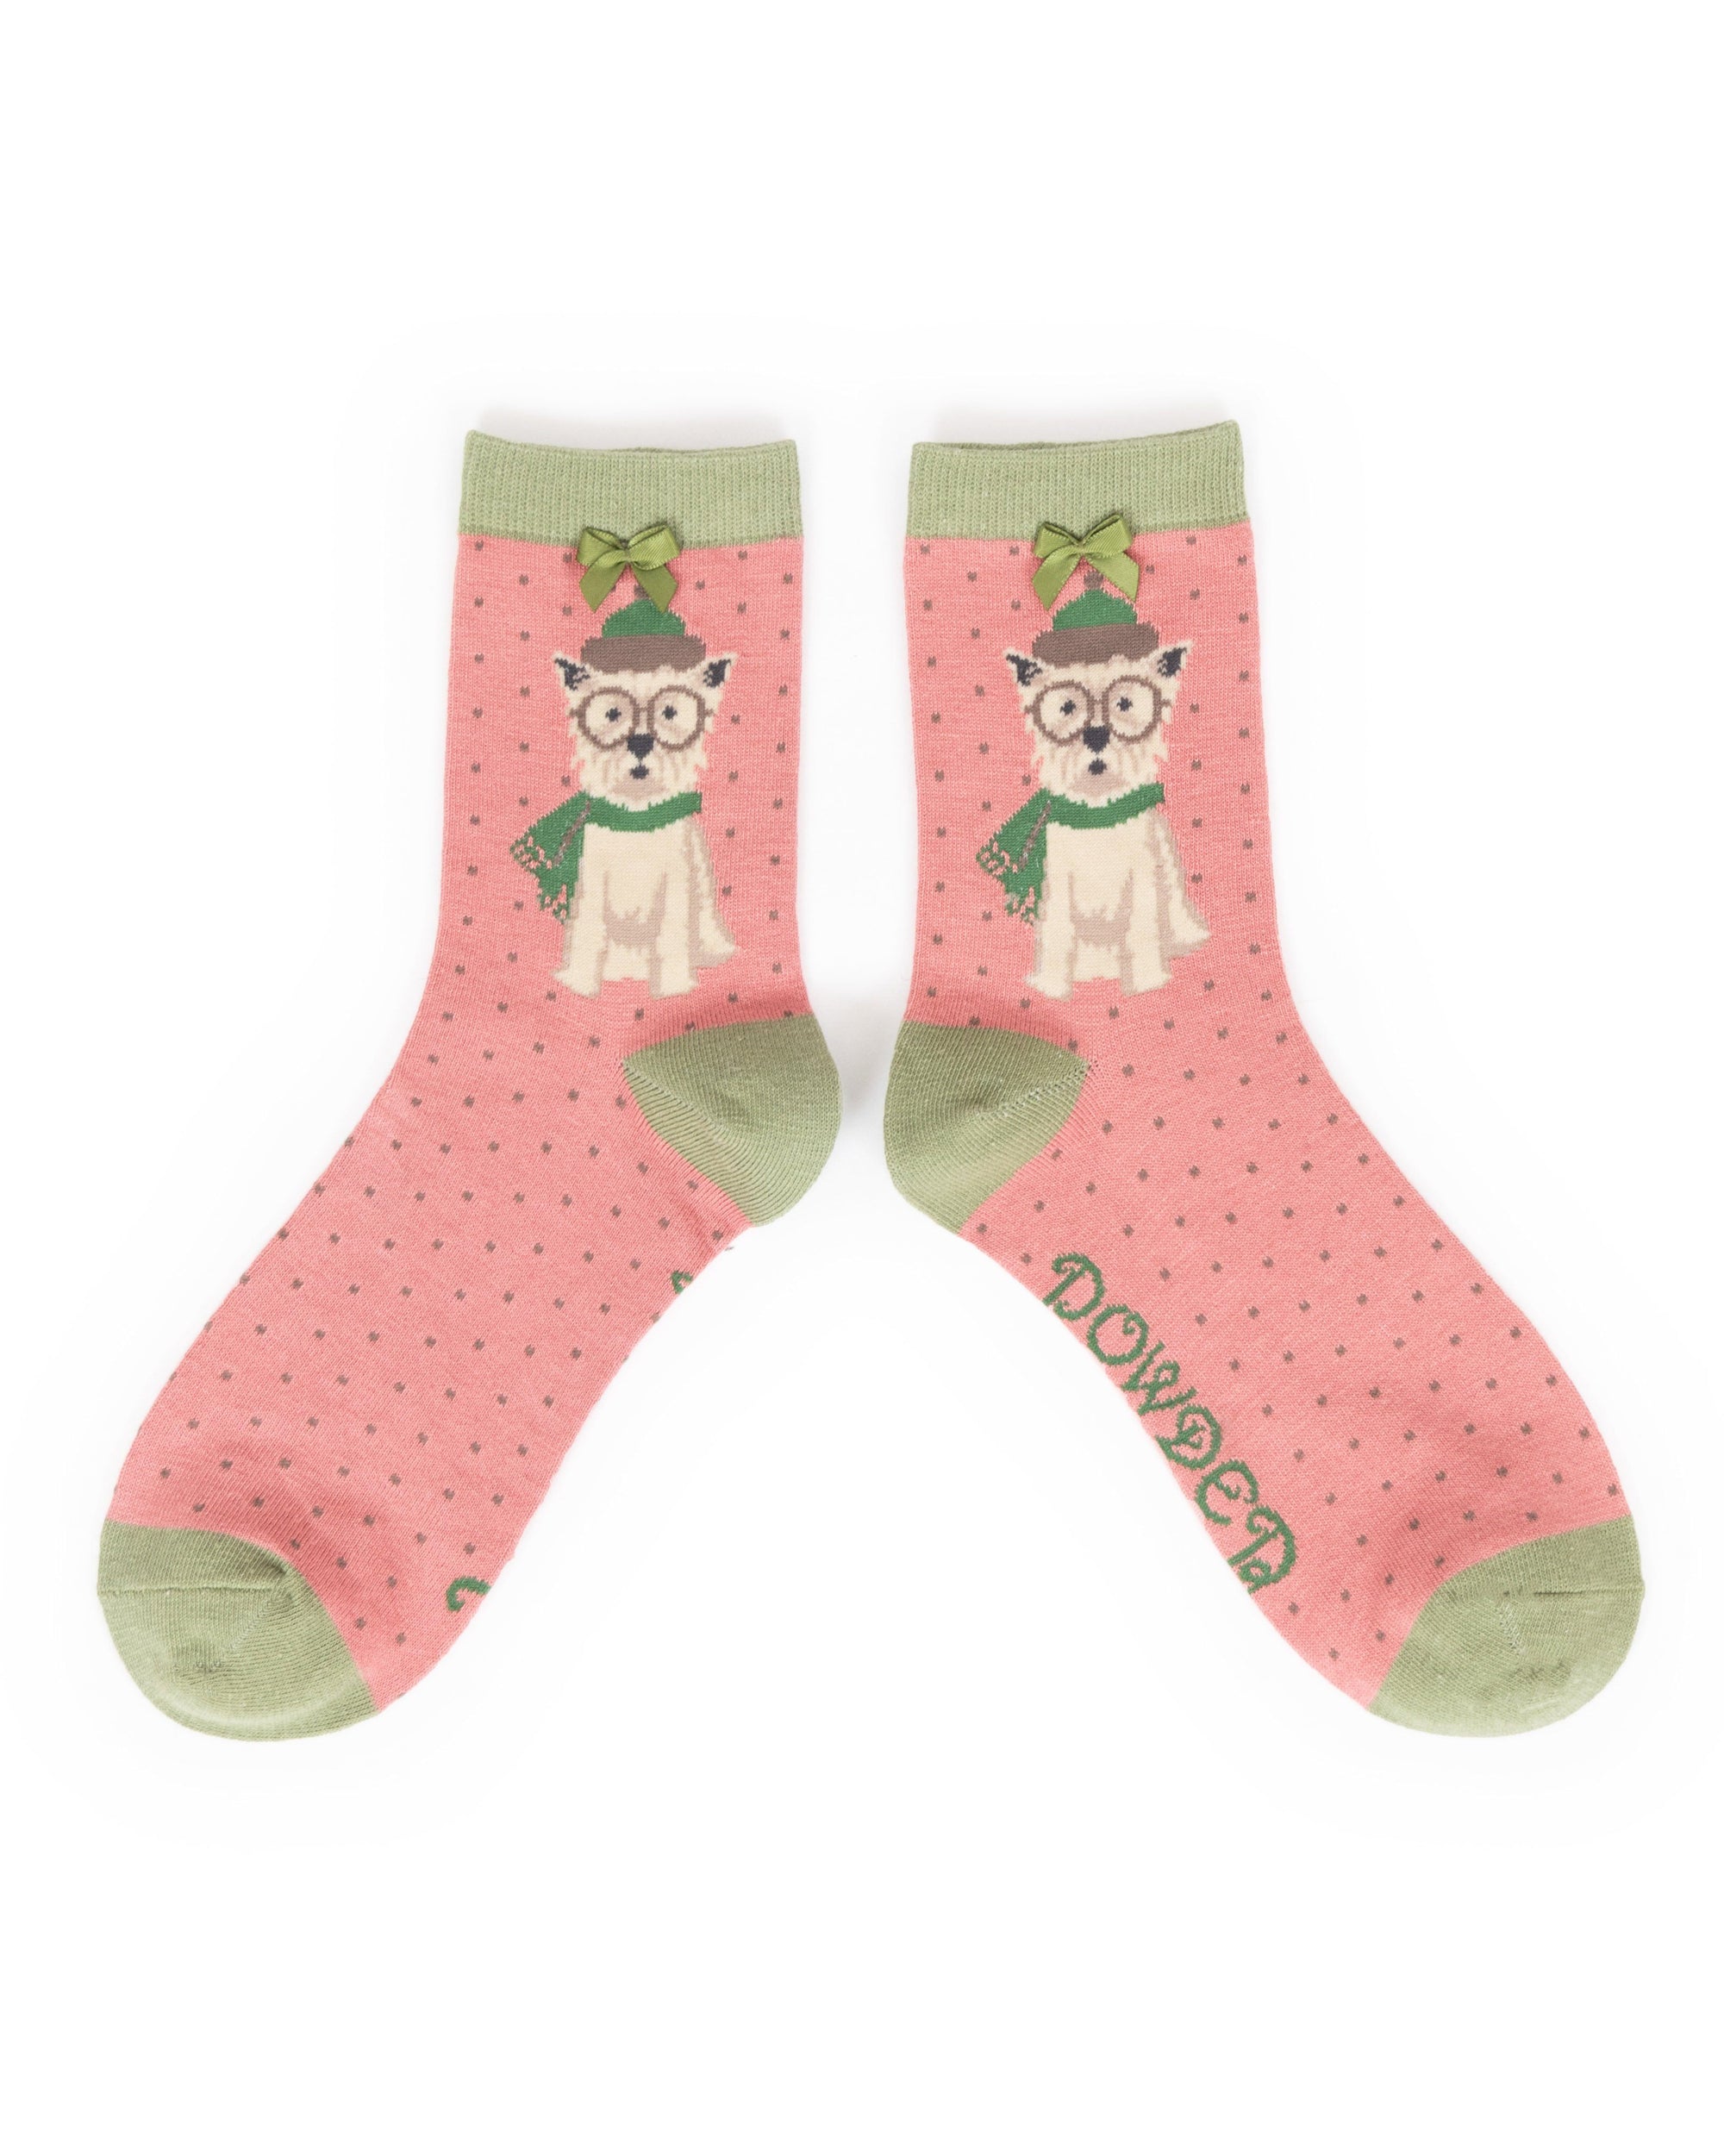 Winter Westie Ankle Socks - BouChic 